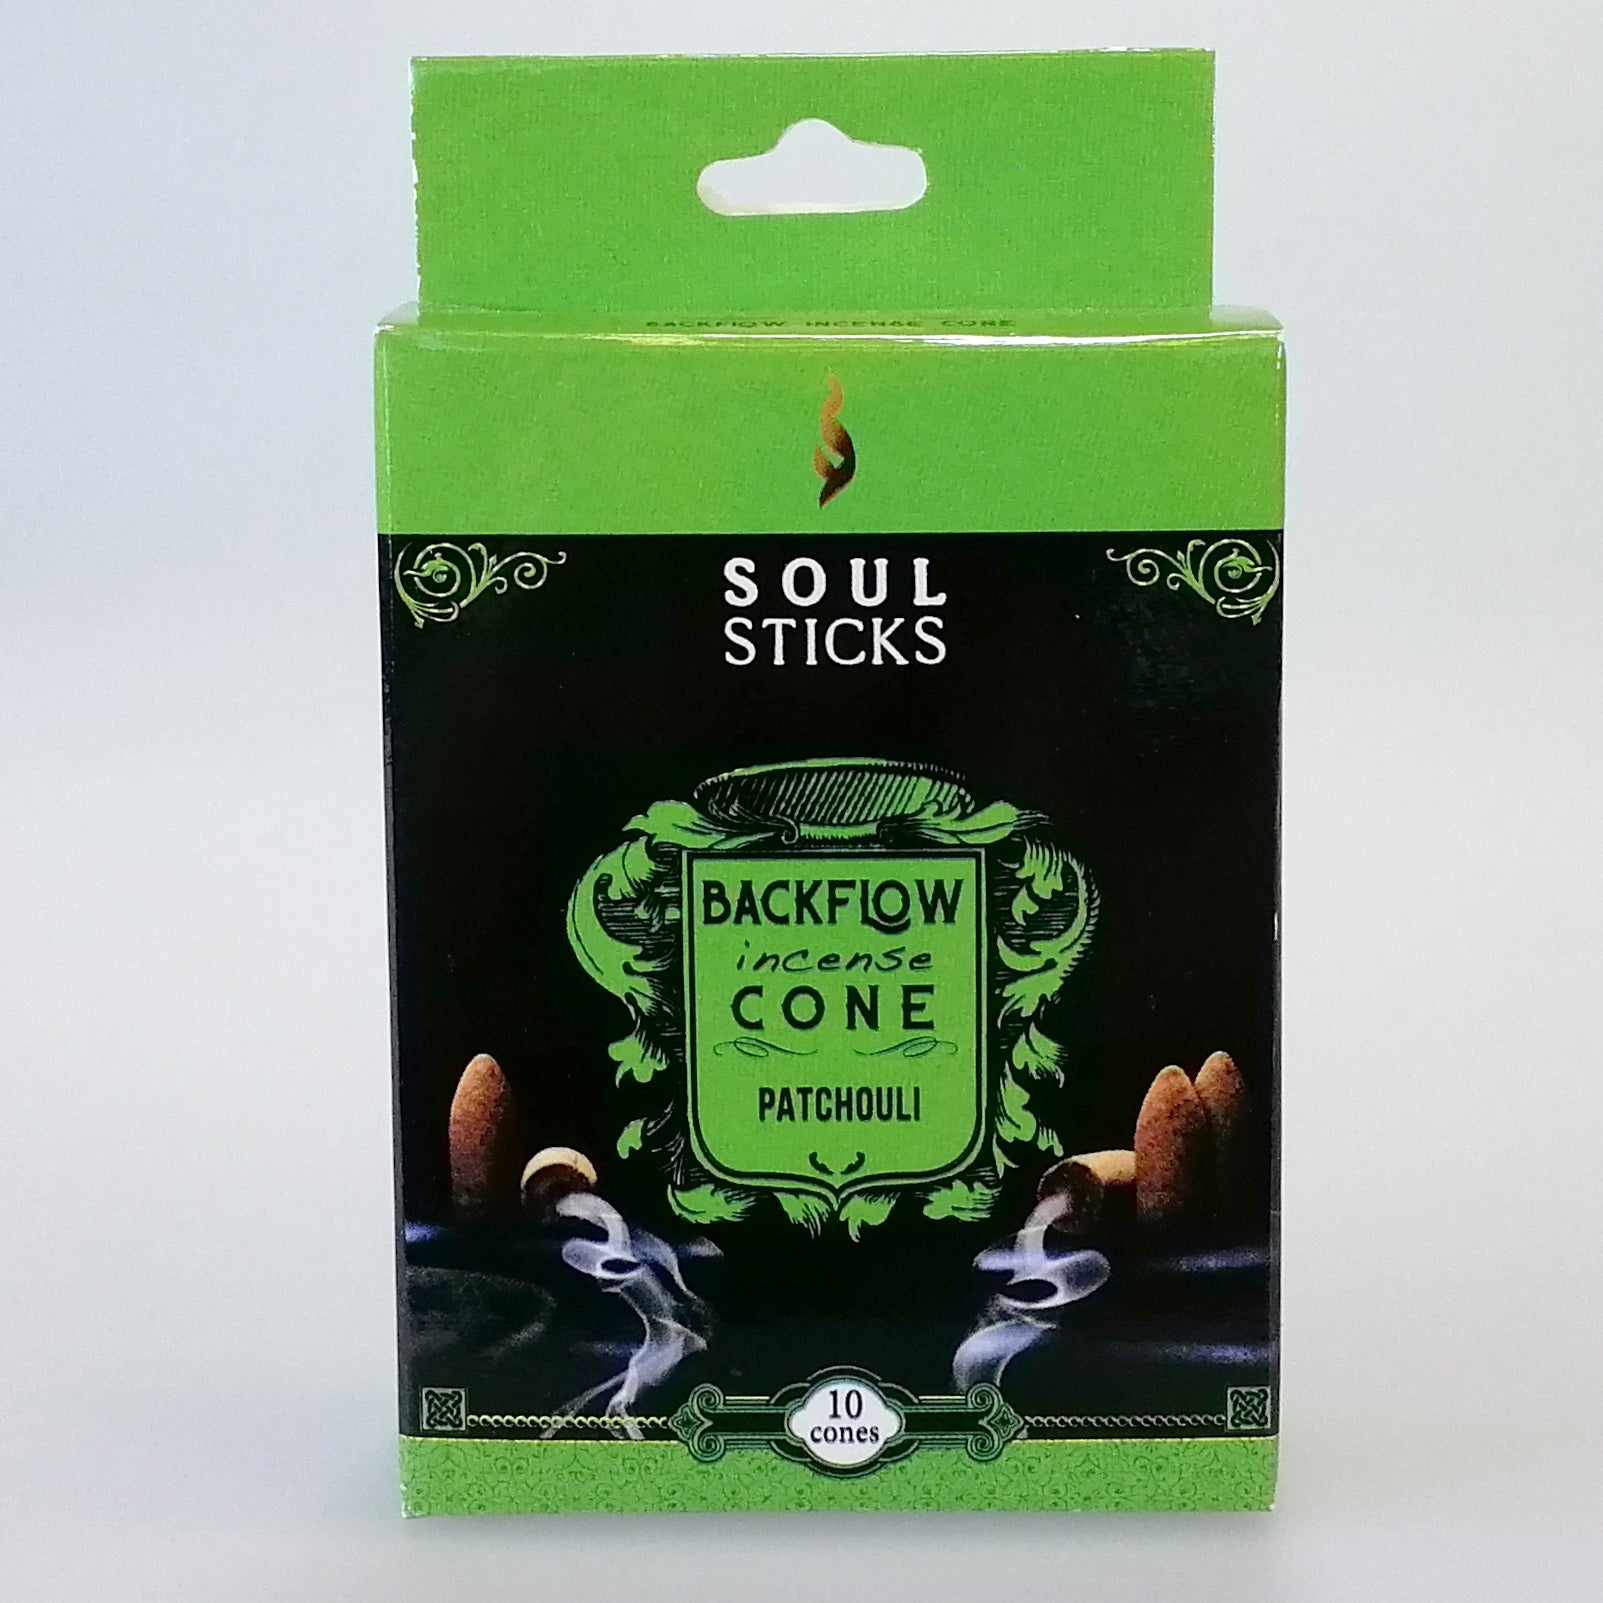 Soul Sticks Backflow Incense Cones - Patchouli